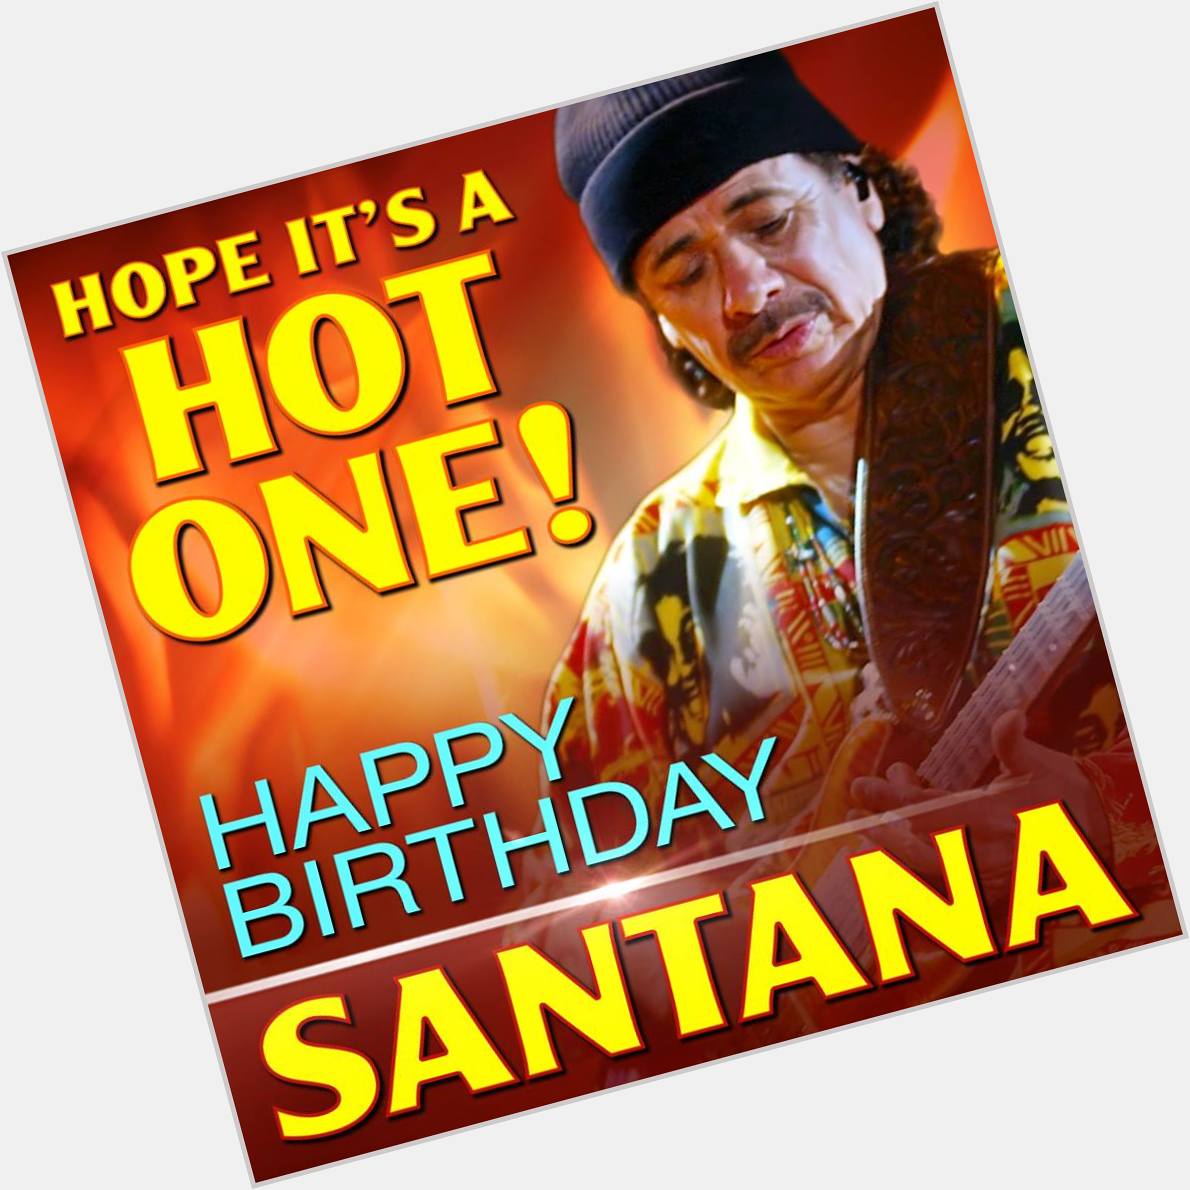 Happy 70th birthday to Carlos Santana 